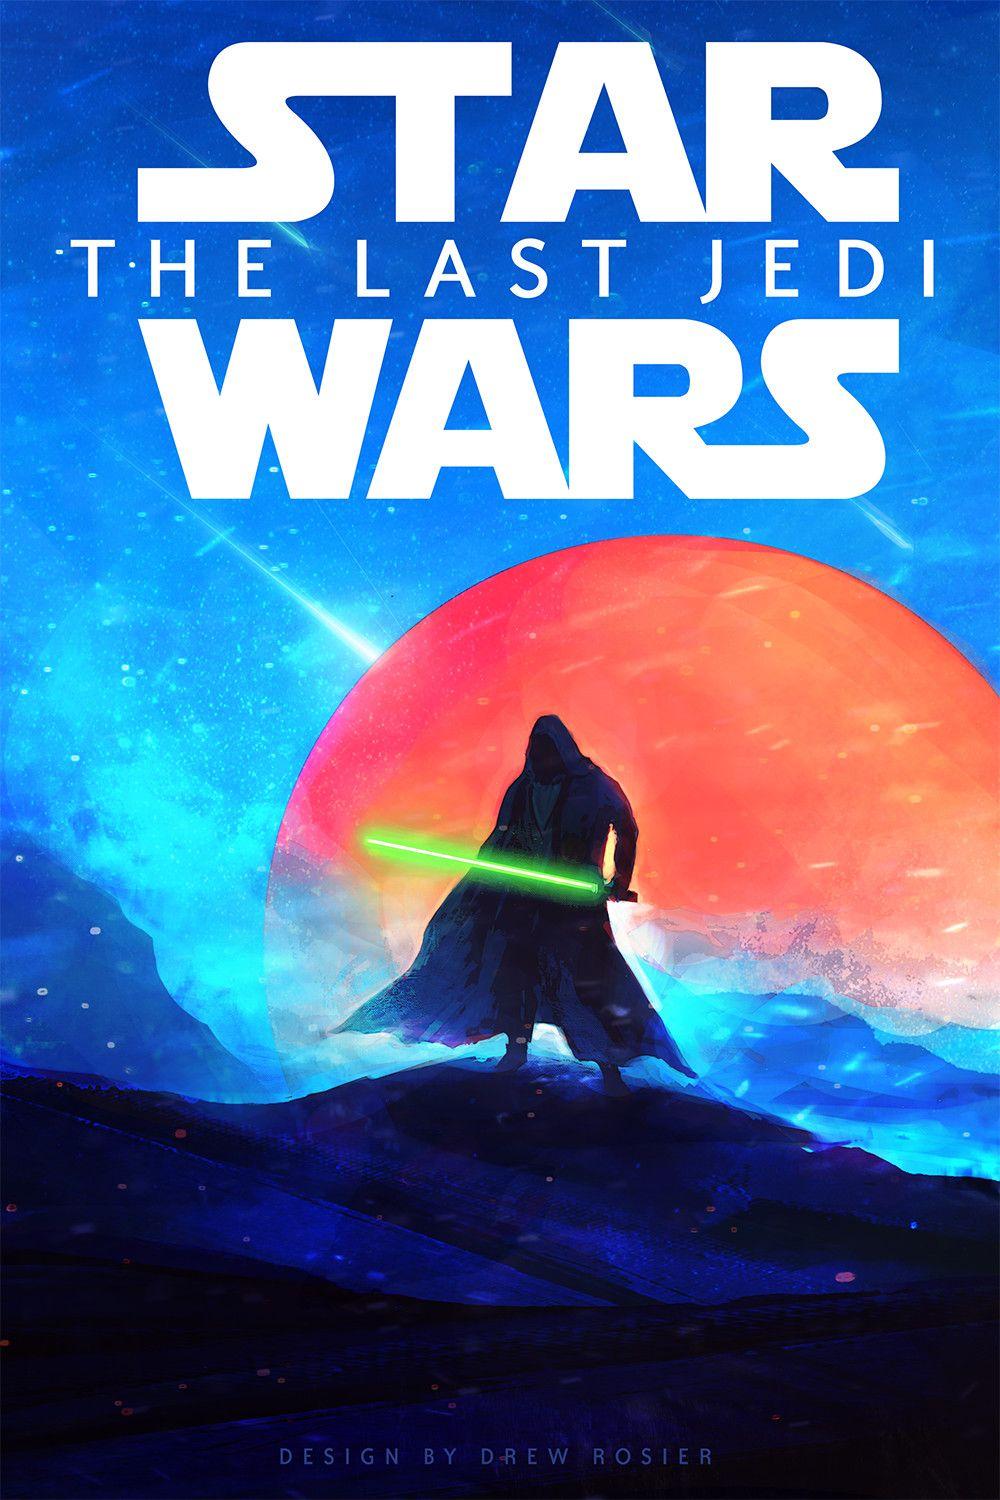 Star Wars: Episode VIII Last Jedi (2017) HD Wallpaper From